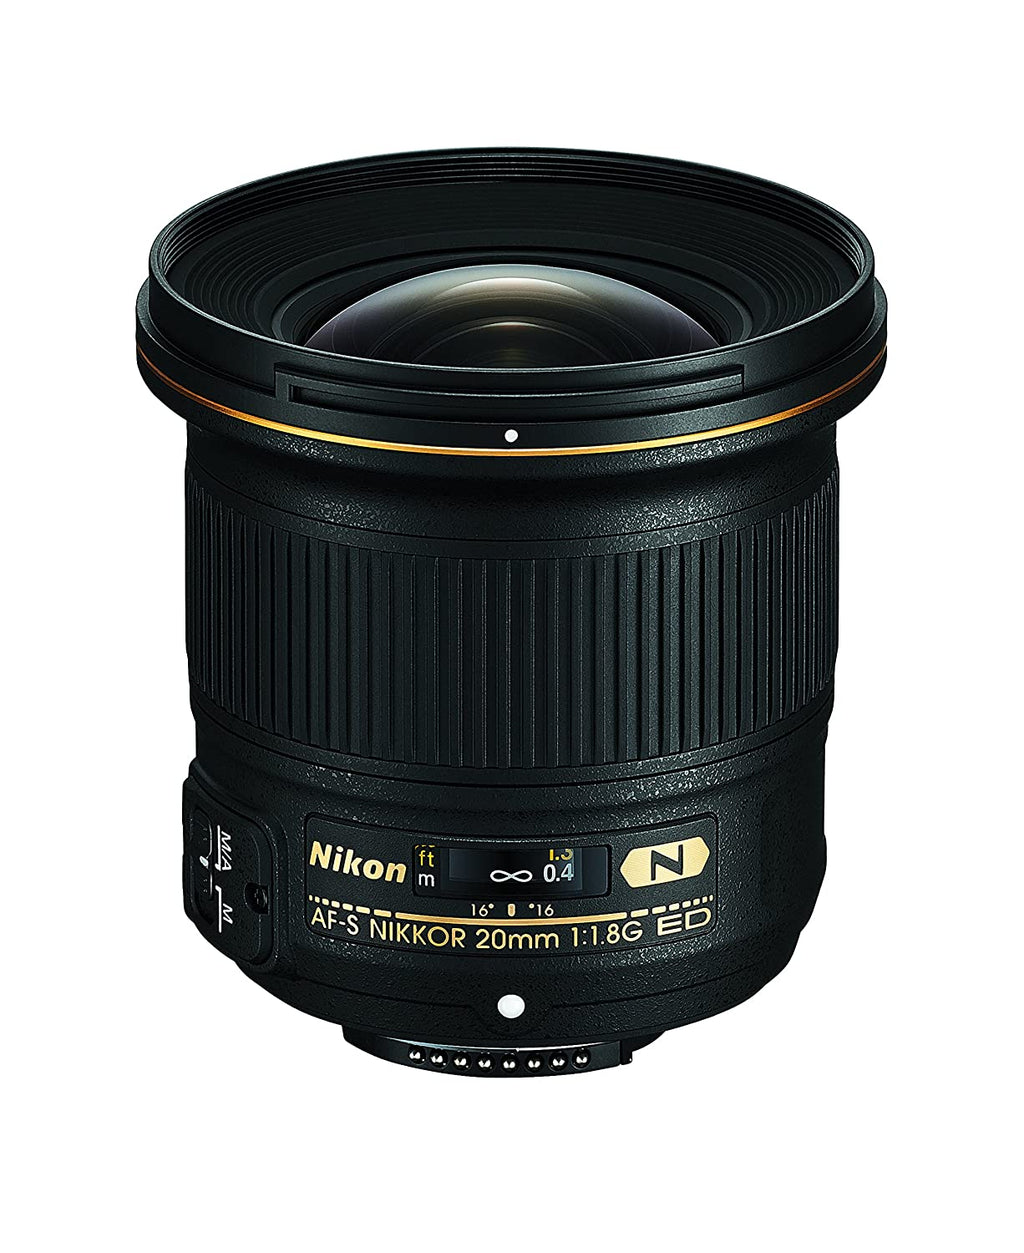 Nikon AF-S Nikkor 20mm f/1.8G ED लेंस (काला)